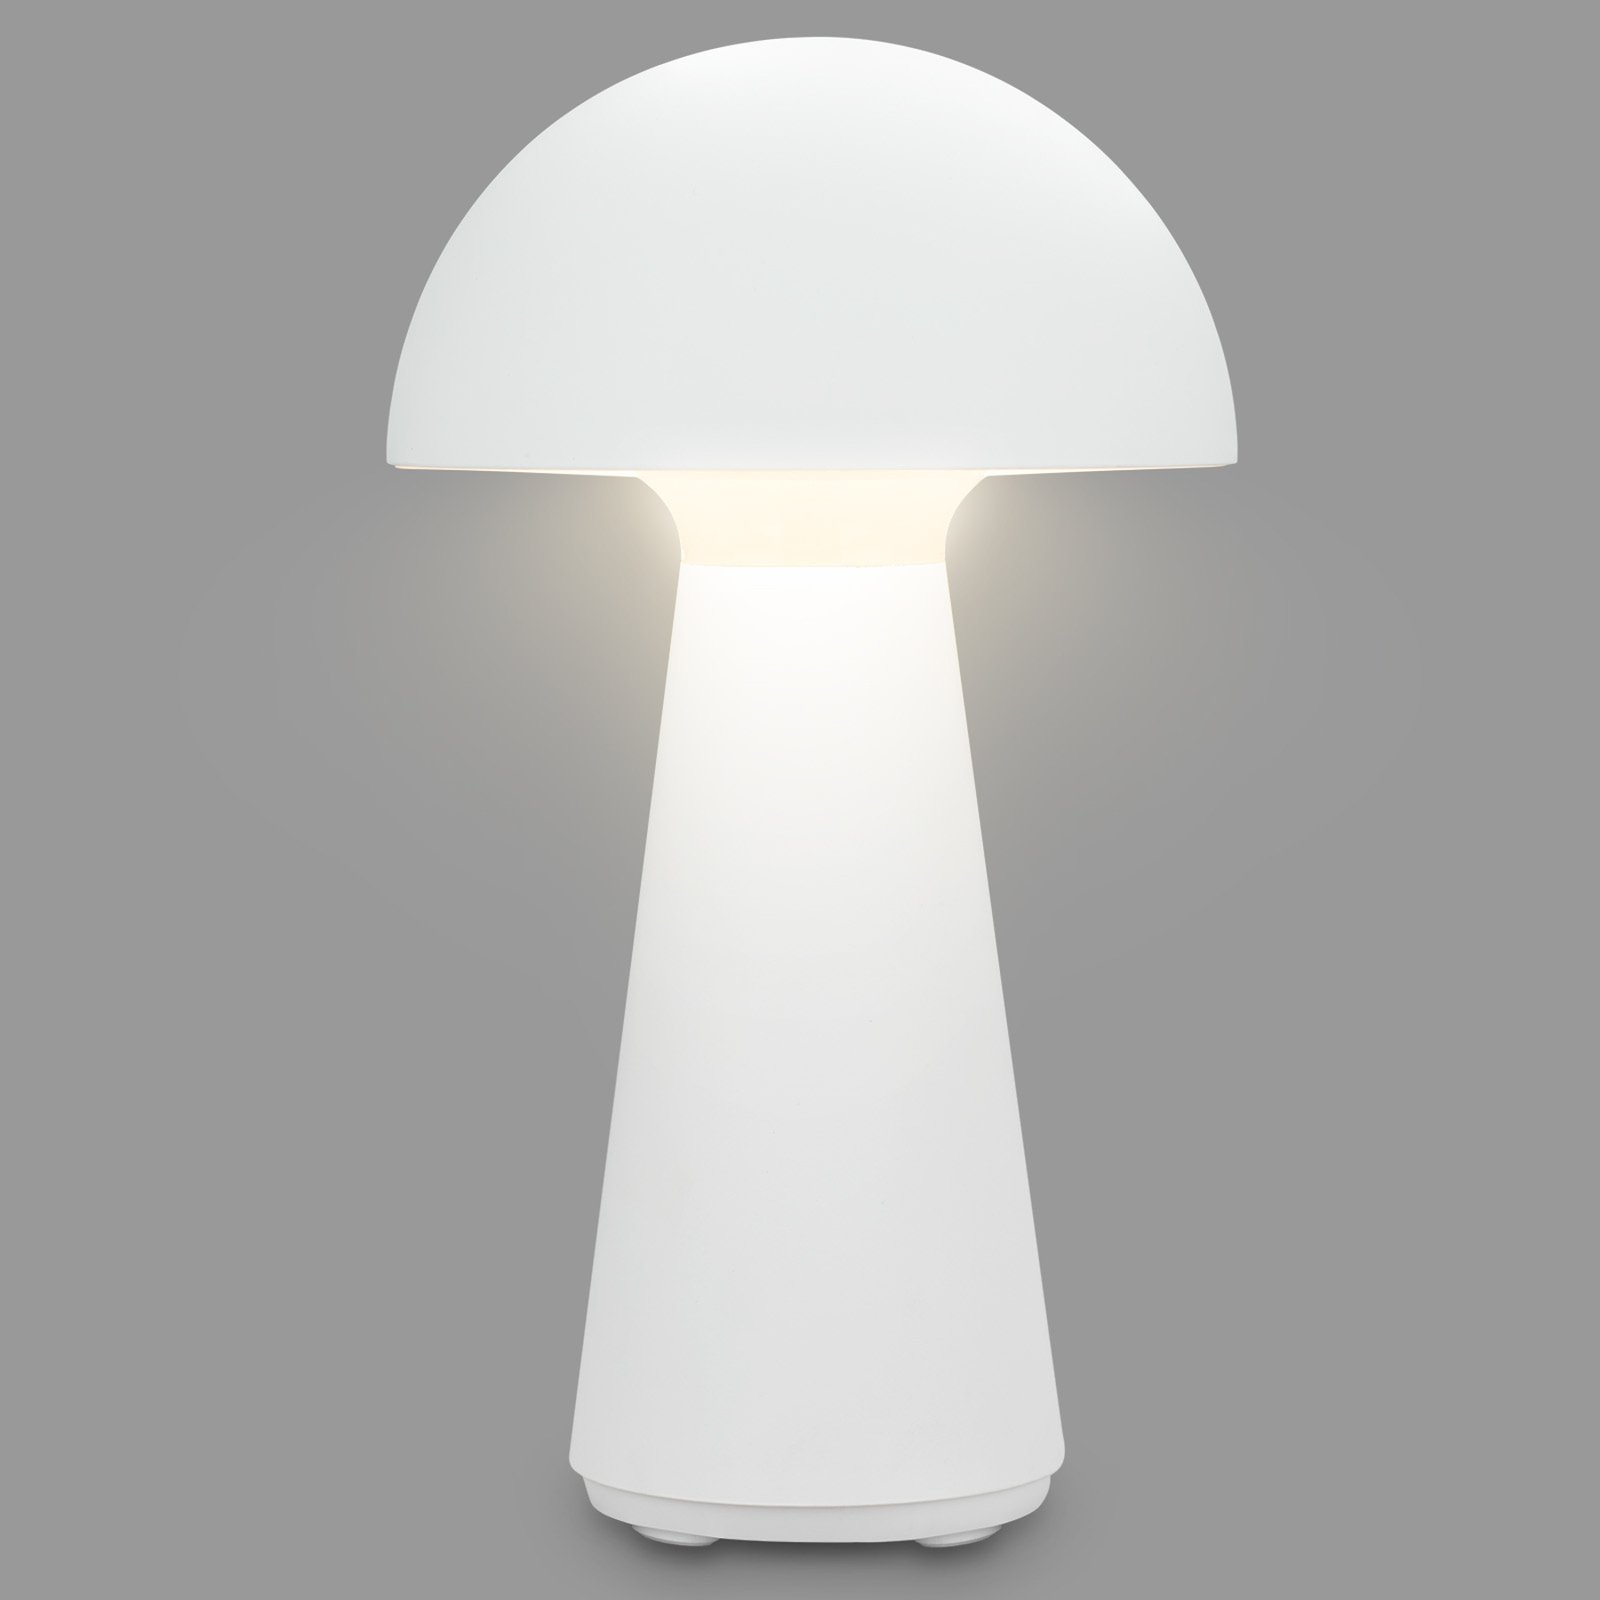 Lampe de table LED à accu Fungo, rechargeable, blanc